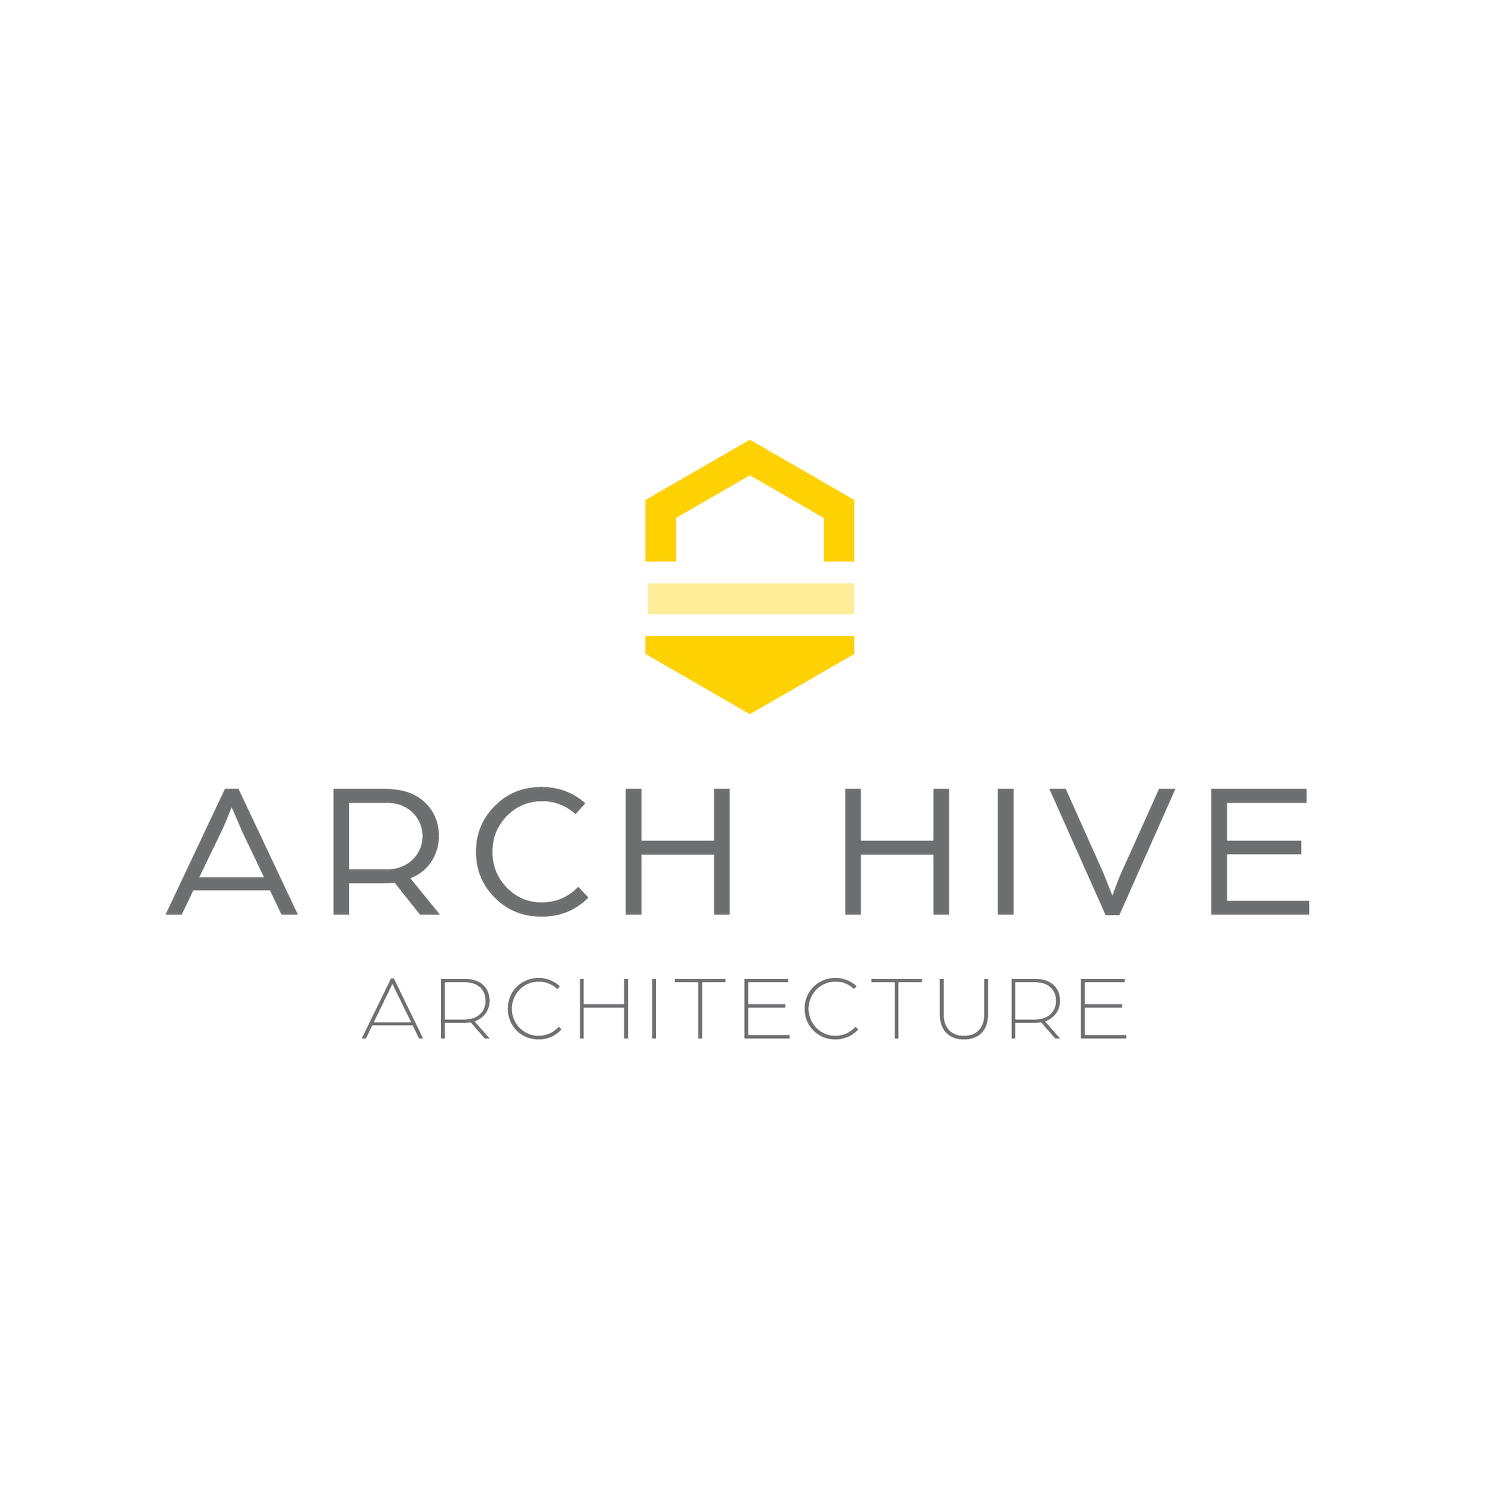 Arch Hive Architecture